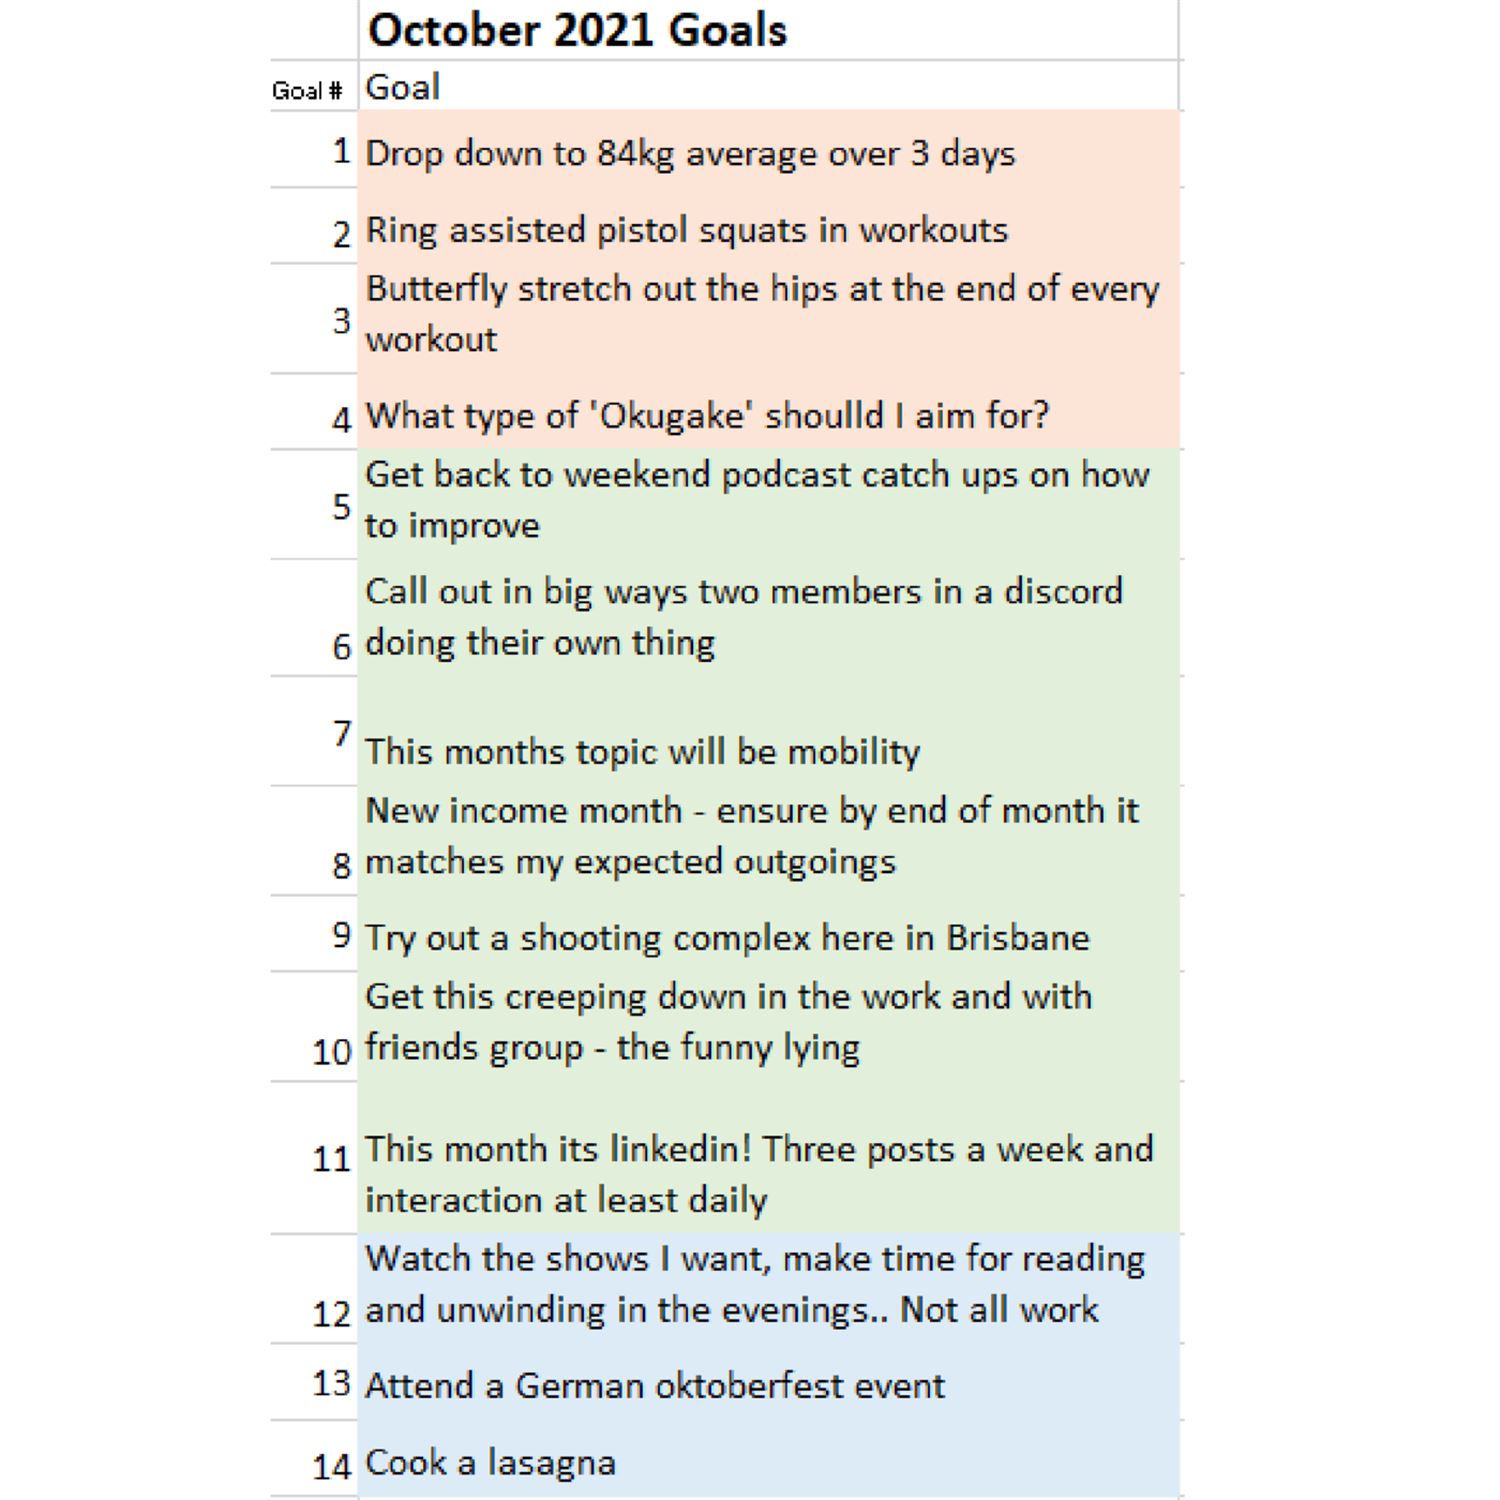 Juan's second 7 October goals